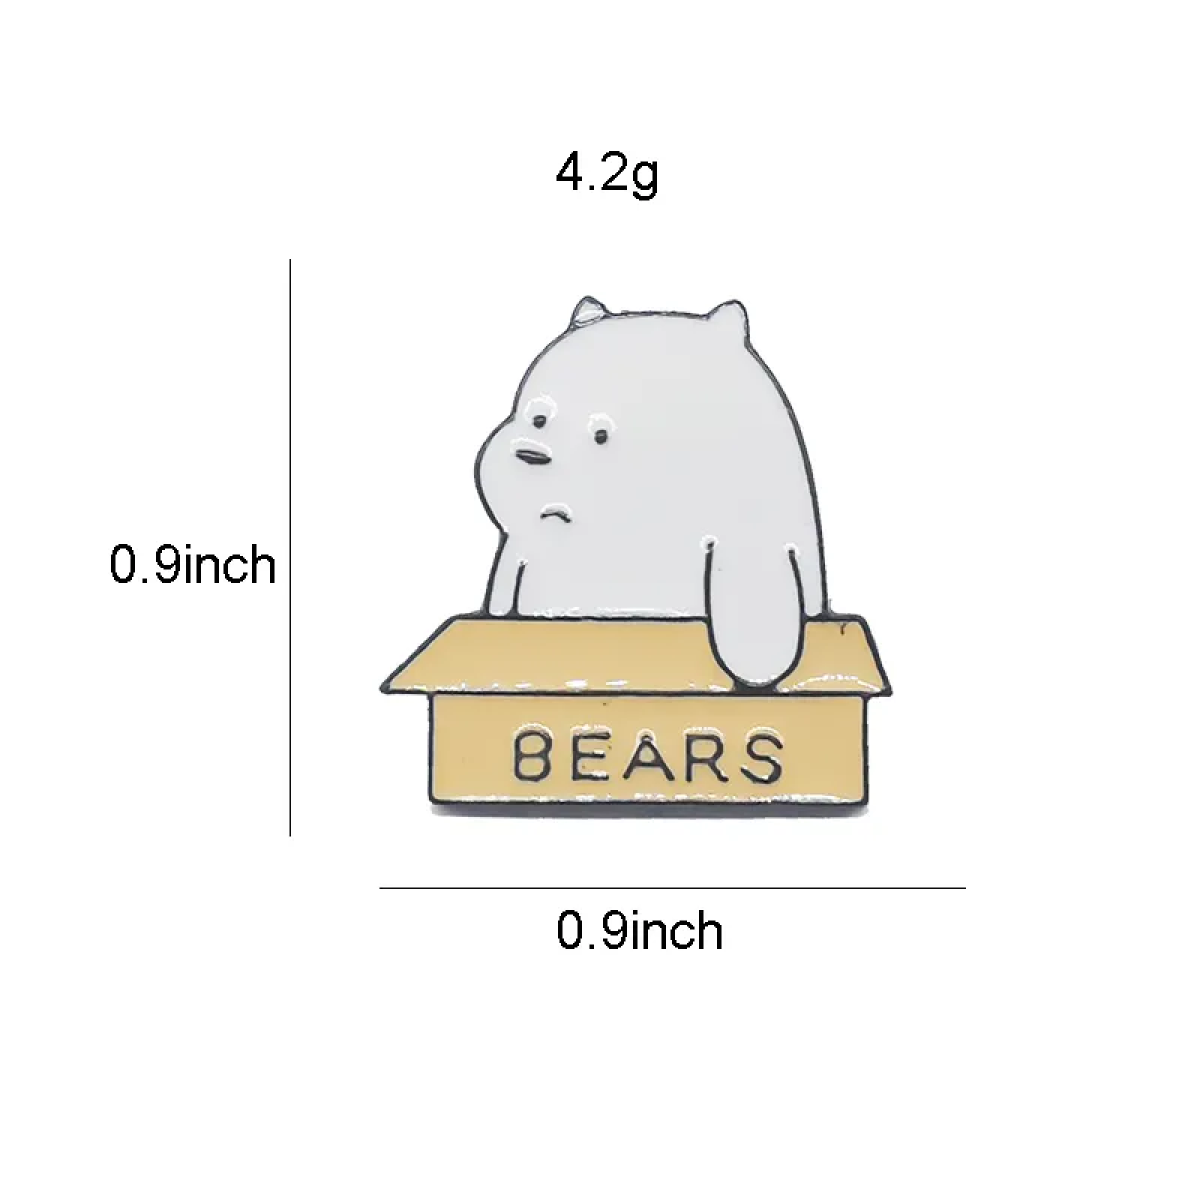 Bear In A Box Lapel Pin